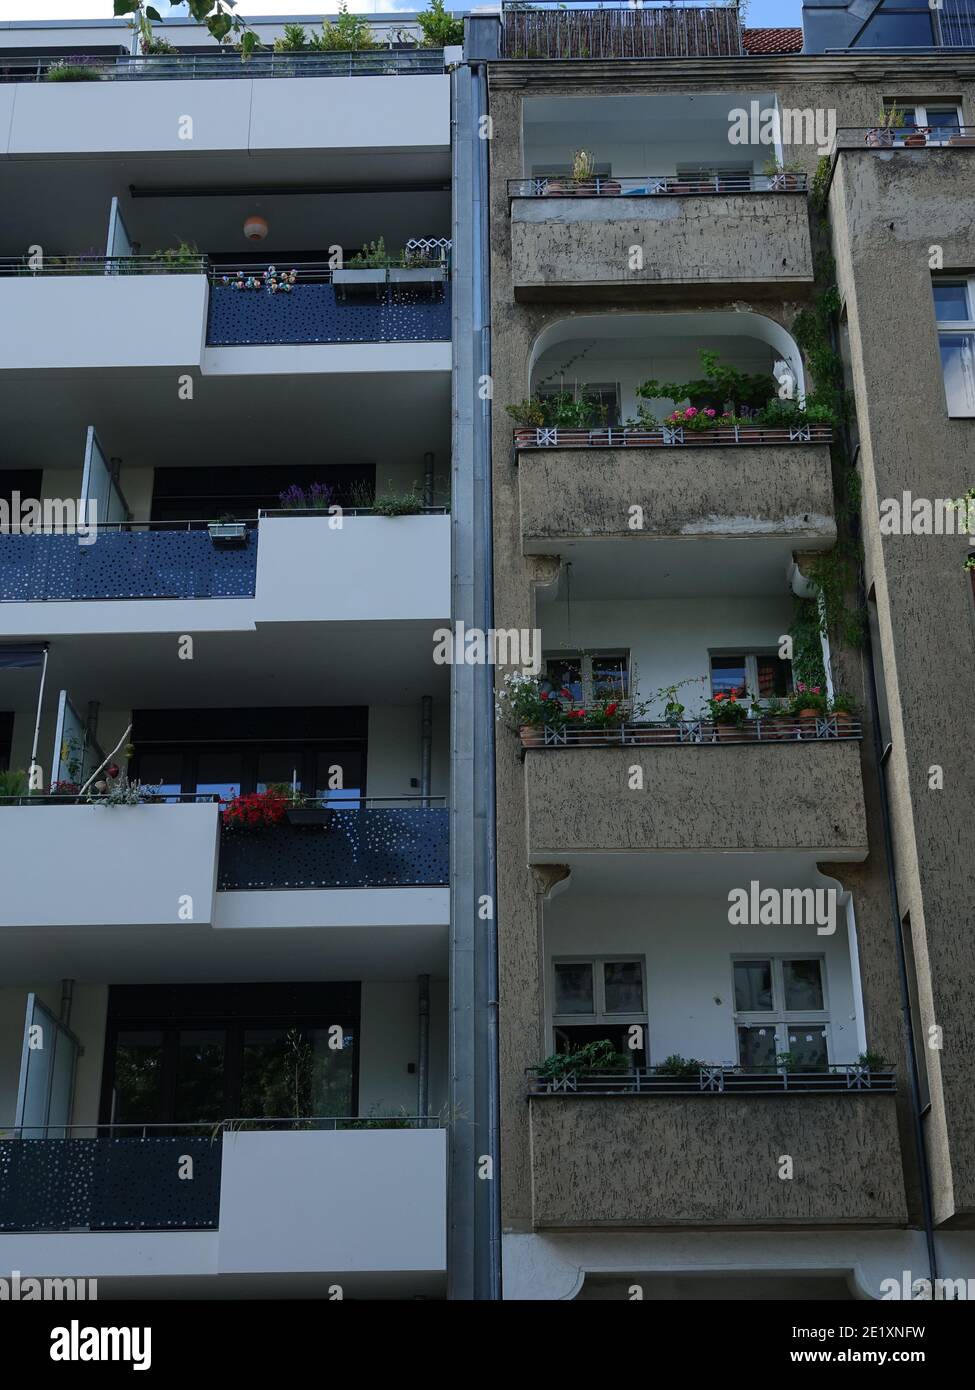 Balkonbild aufgenommen in Neukölln, Berlin Stockfoto